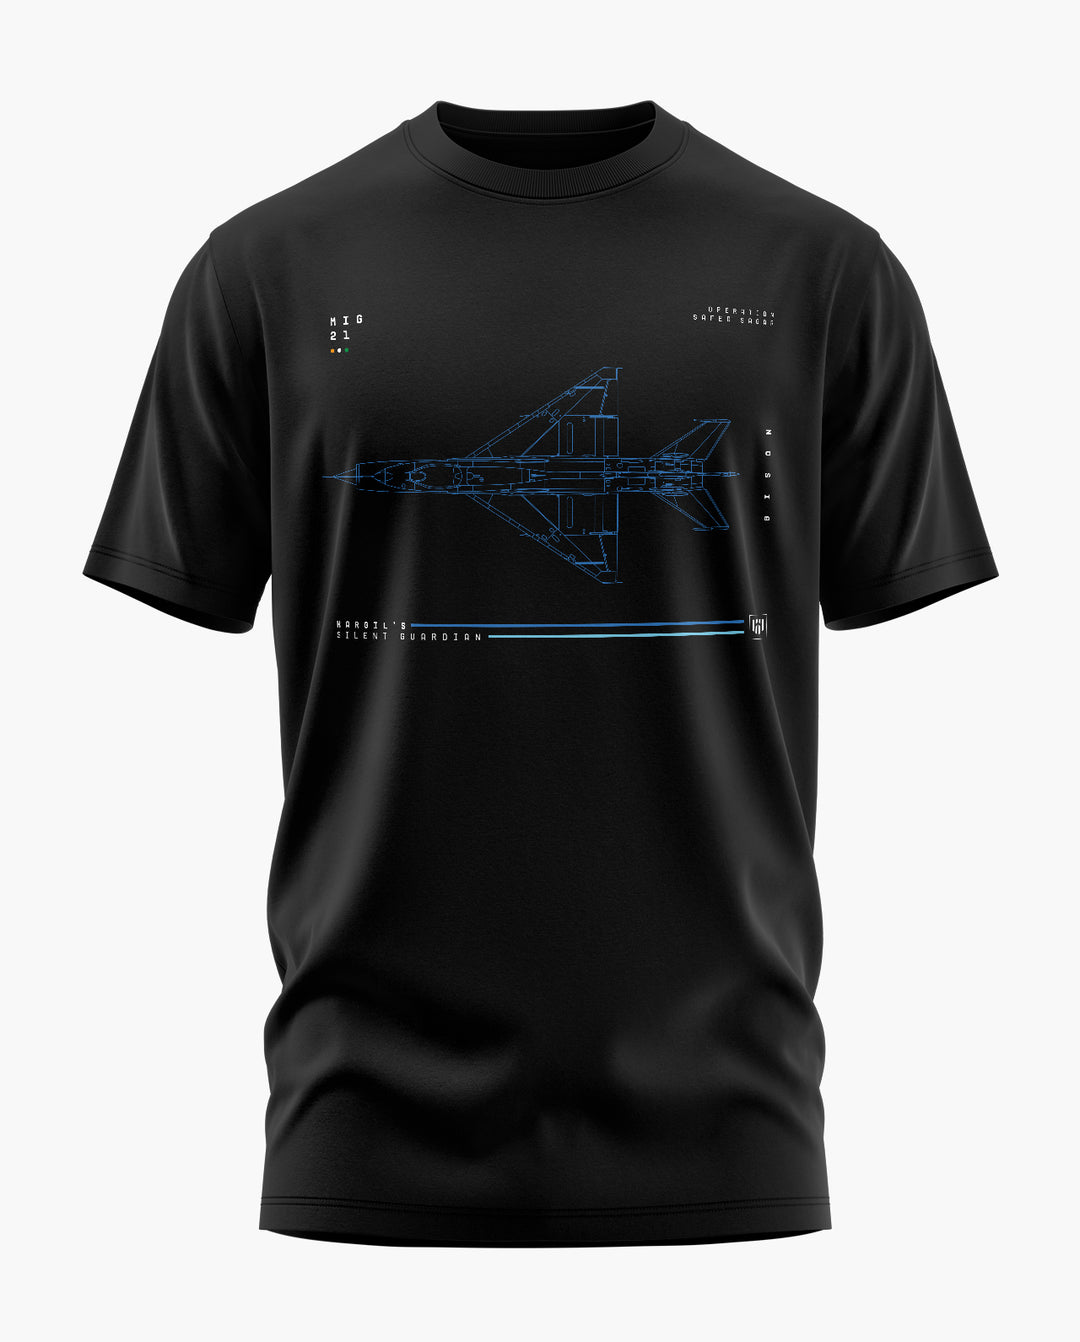 MiG 21 Silent Guardian T-Shirt